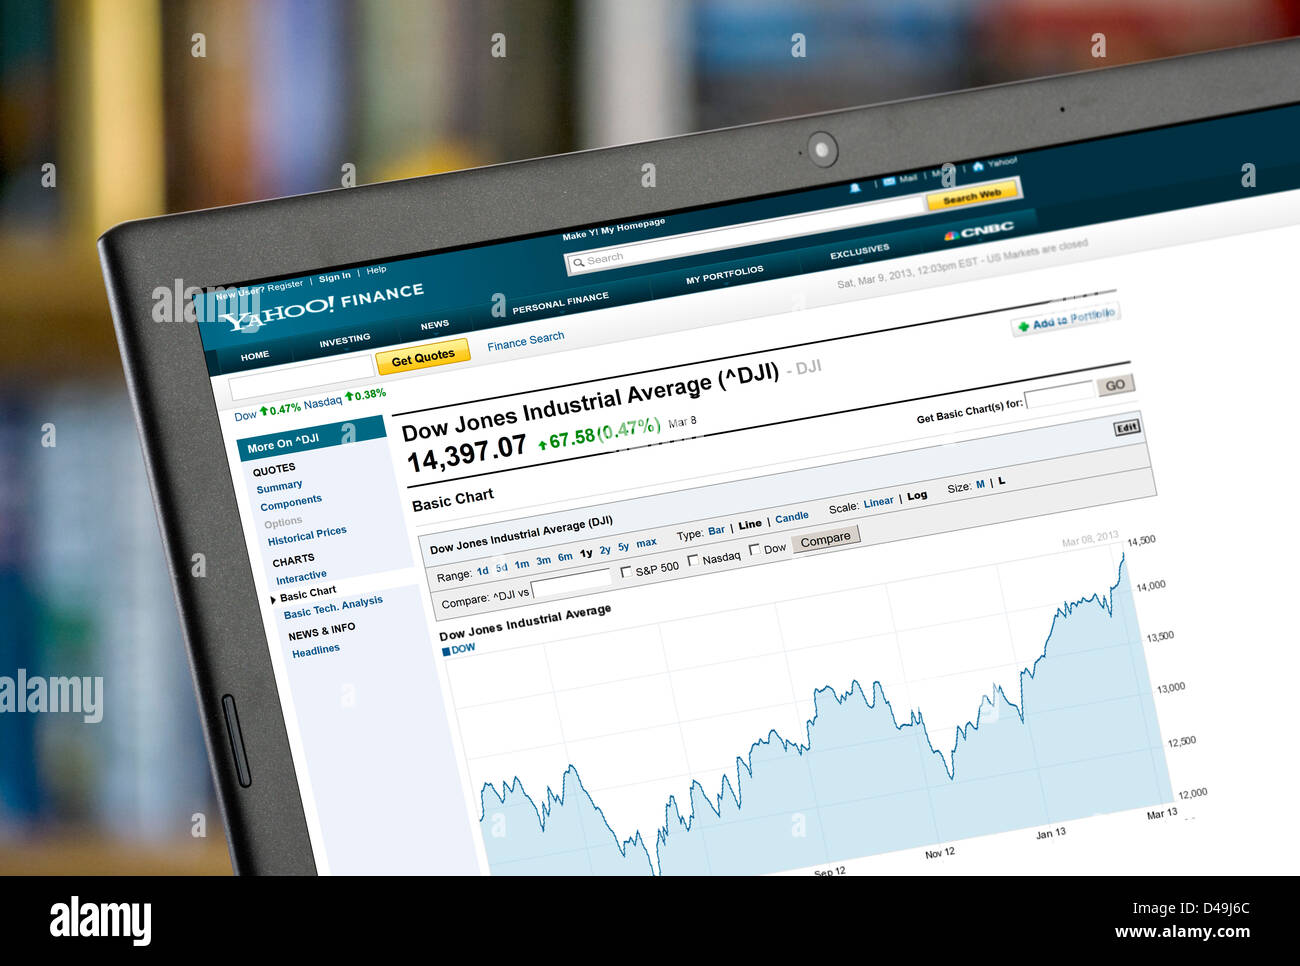 Yahoo Finanzen-Diagramm zeigt den Anstieg der Dow Jones Industrial Average bis 8. März 2013 über einen Zeitraum von 1 Jahr Stockfoto